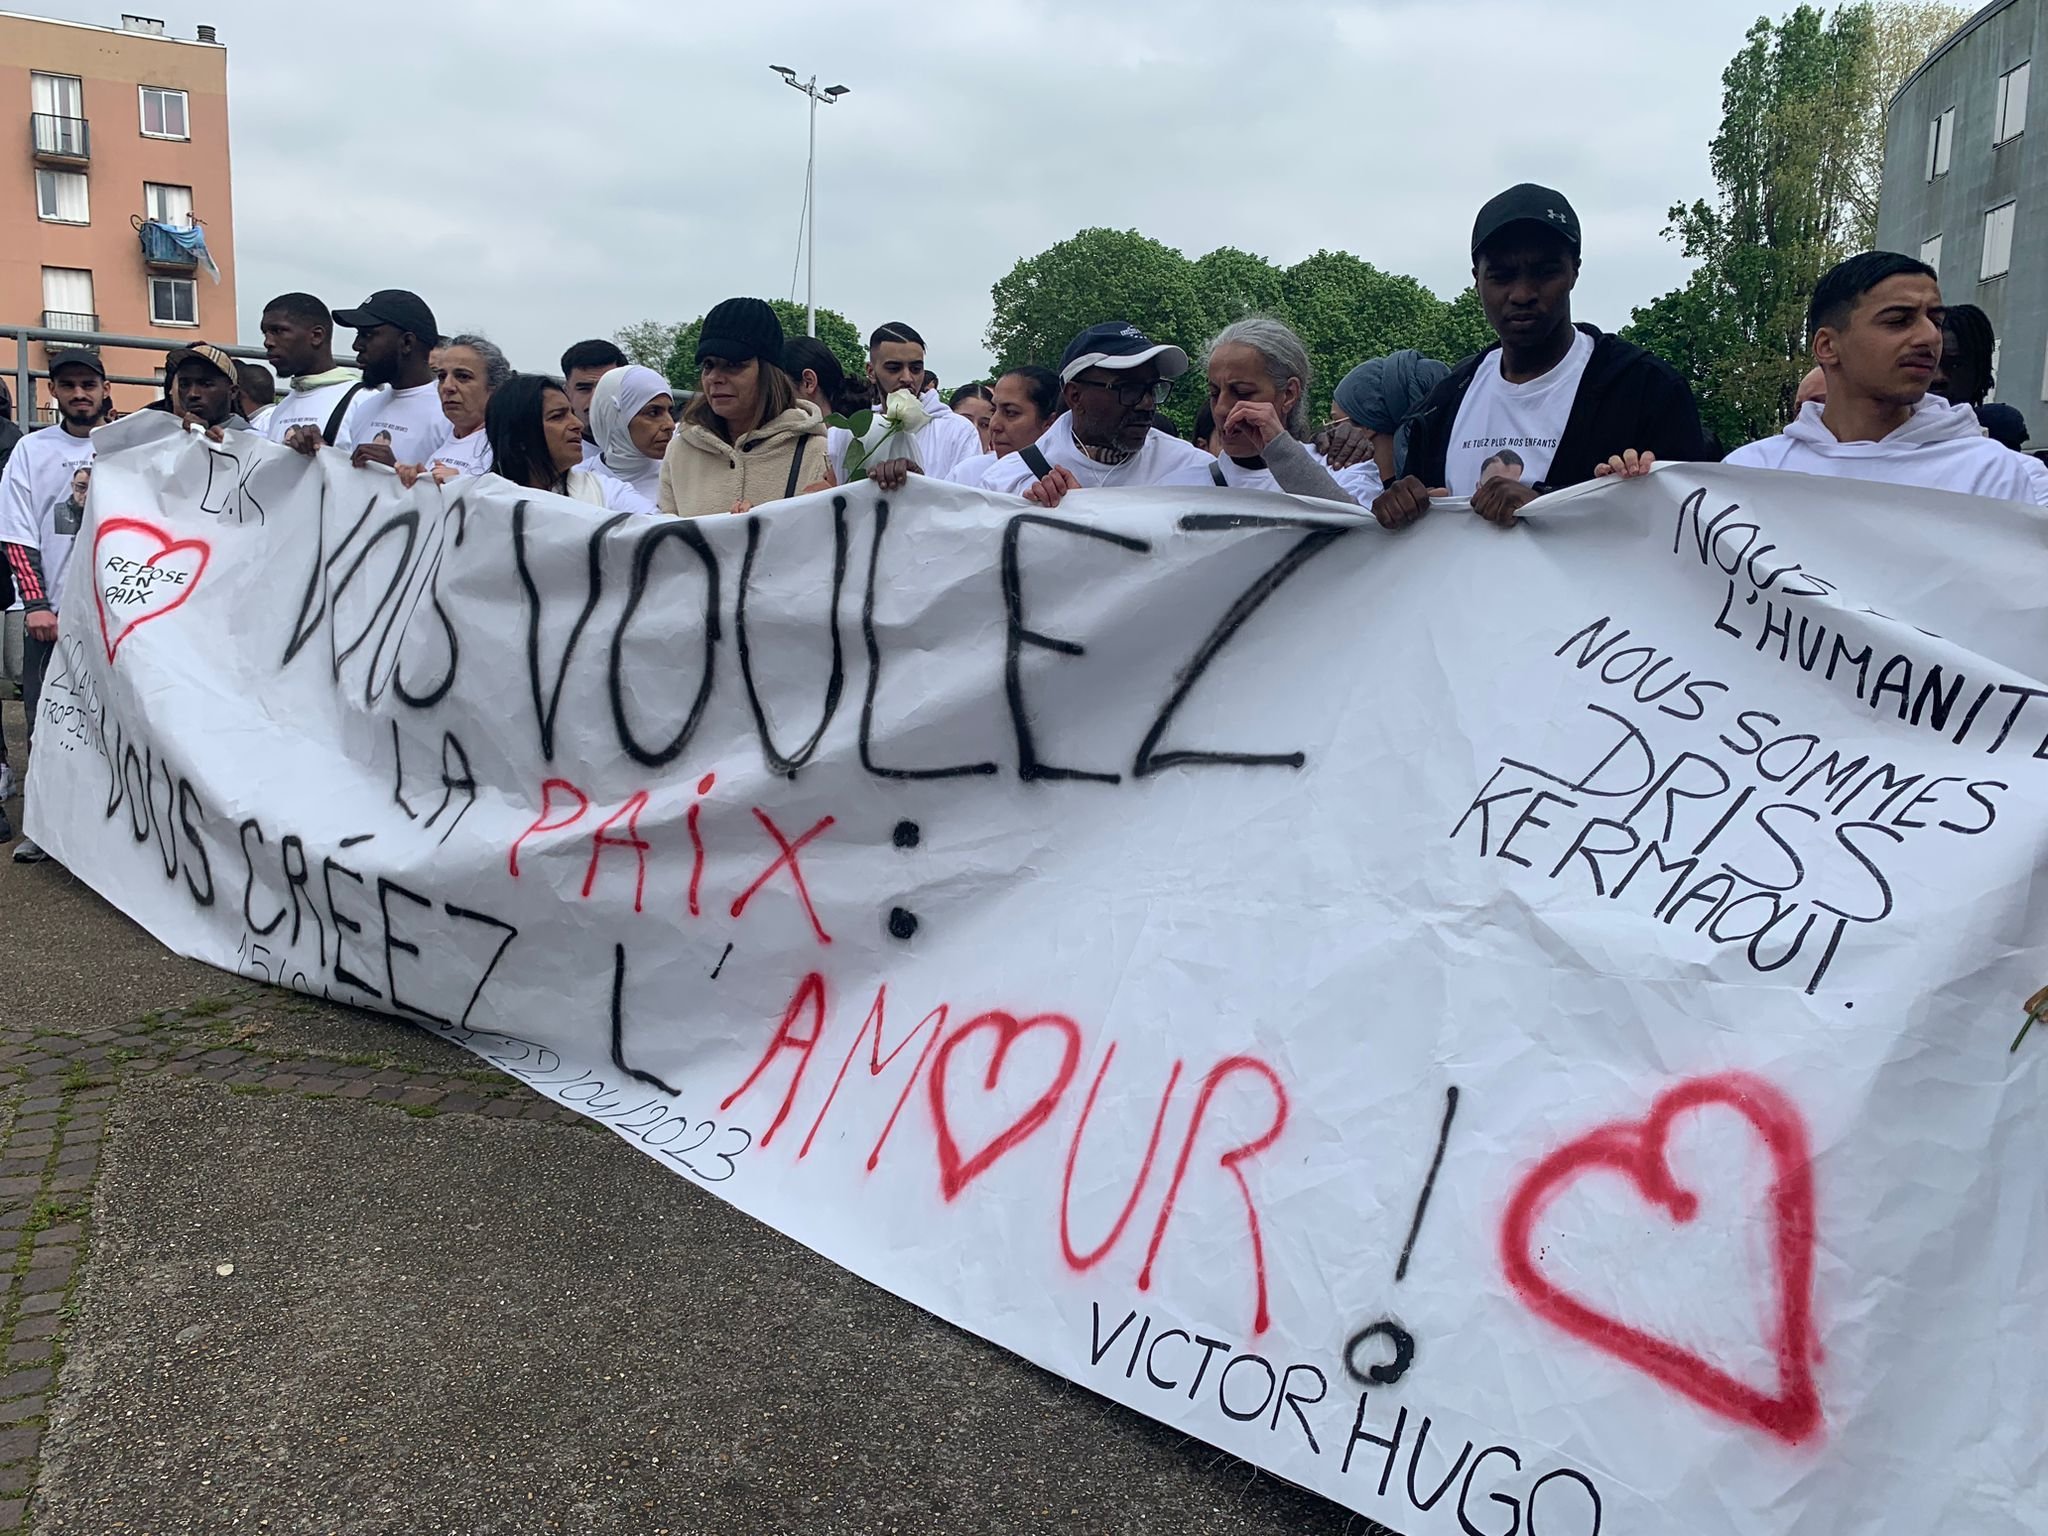 Samedi 29 avril, Bobigny. Pour rendre hommage à Driss, le jeune homme de 22 ans poignardé à mort à Drancy, ses amis ont confectionné une banderole avec un message de paix : "Vous voulez la paix. Vous créez l'amour".